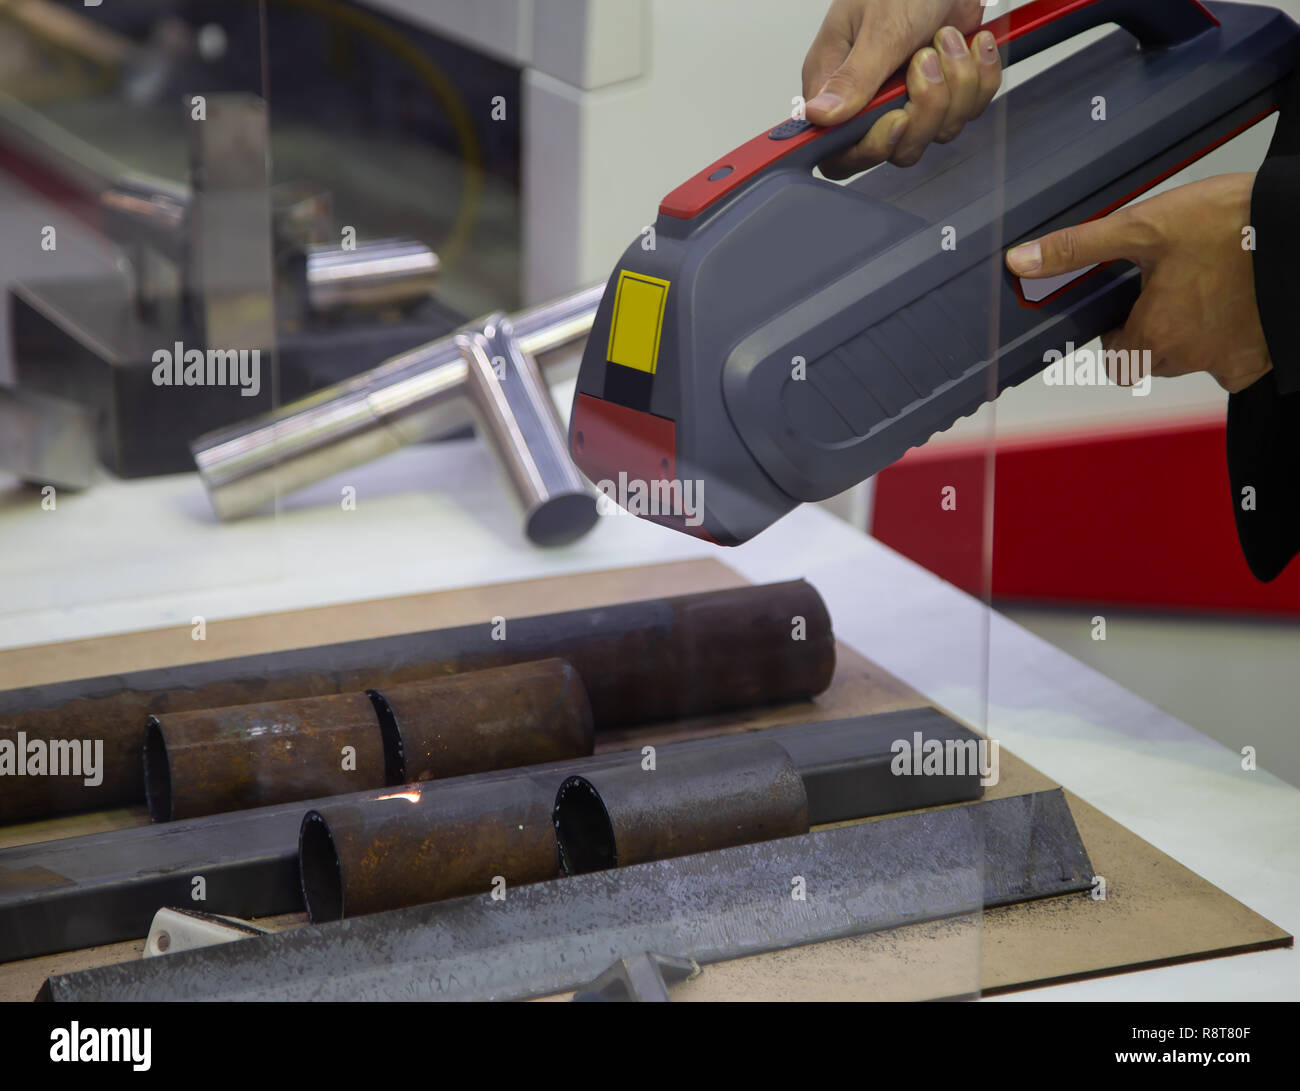 Handheld Laser Reinigung Pistole Rost entfernen aus Rohr Stockfotografie -  Alamy